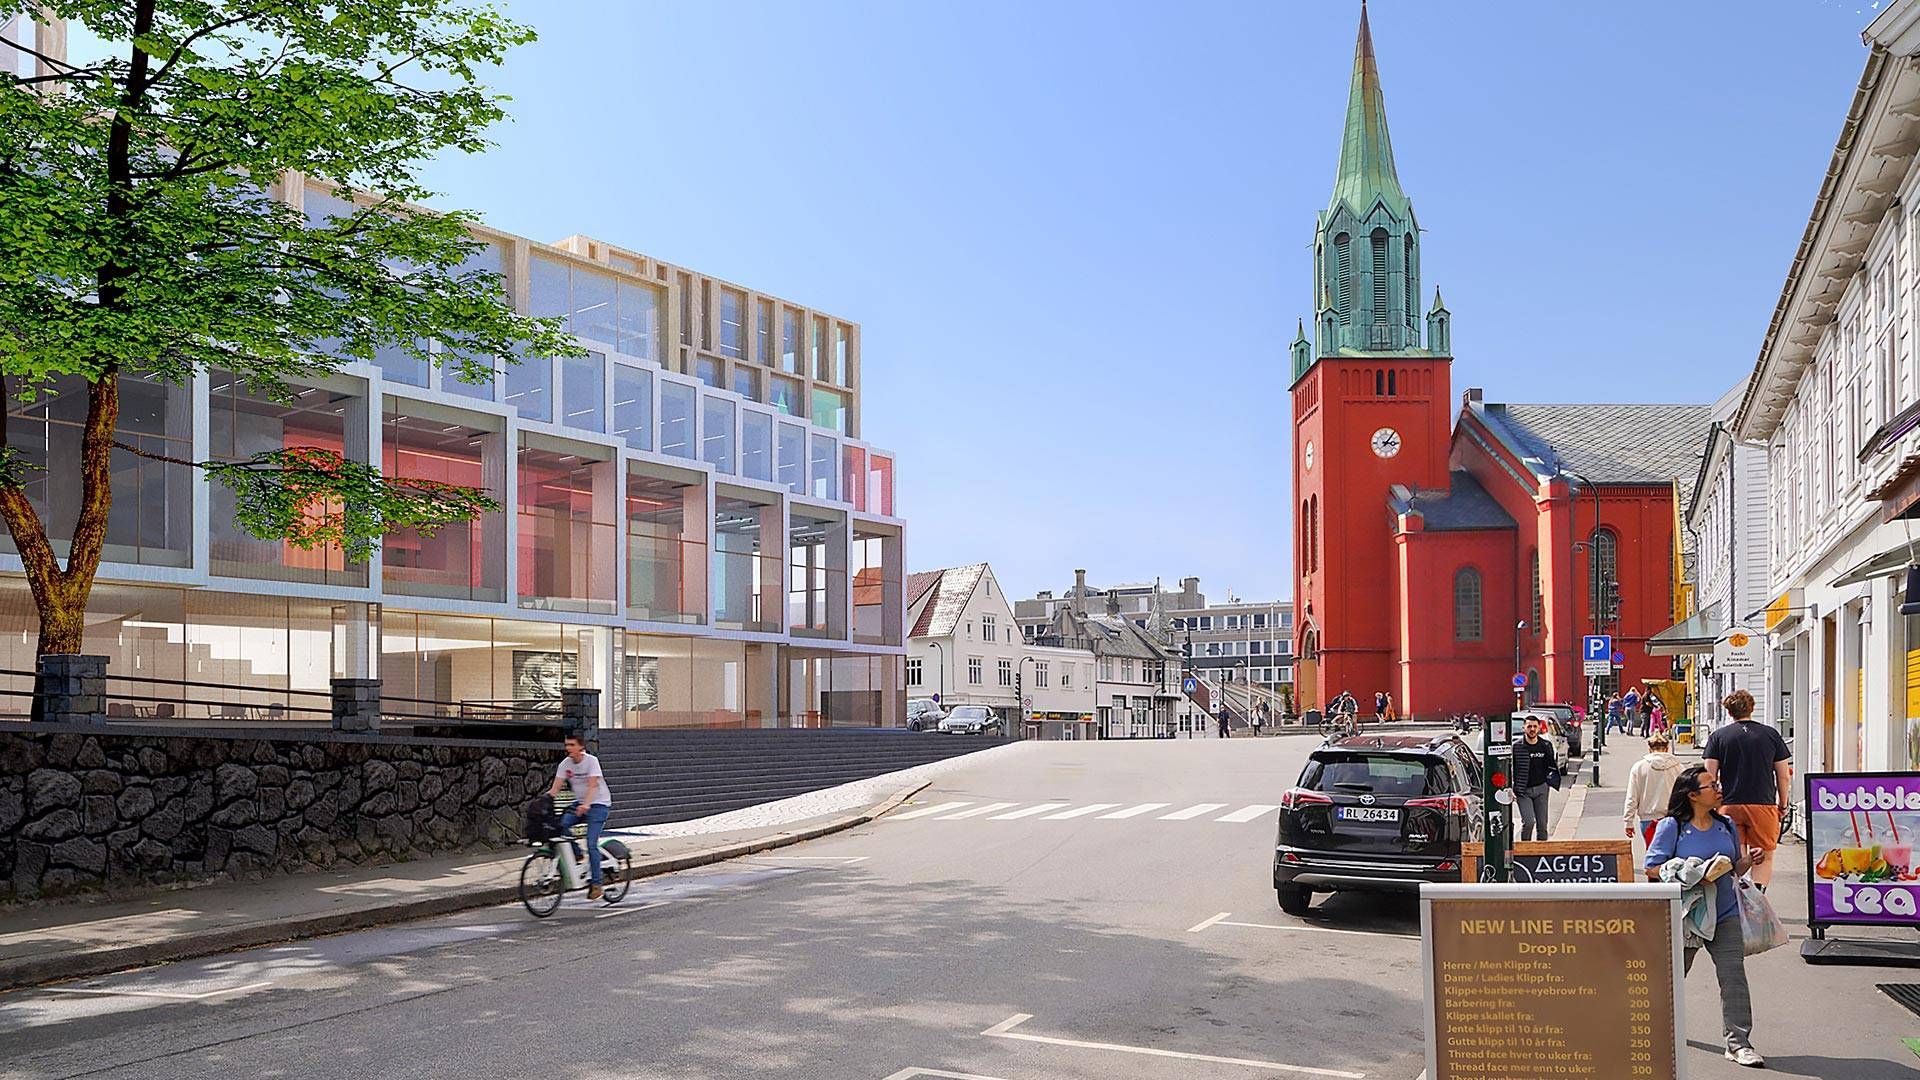 HVEM FLYTTER INN? Stavanger Aftenblad og NRK skulle etter planen inn i nybygget, men nå er avtalen terminert. | Foto: SVG Property